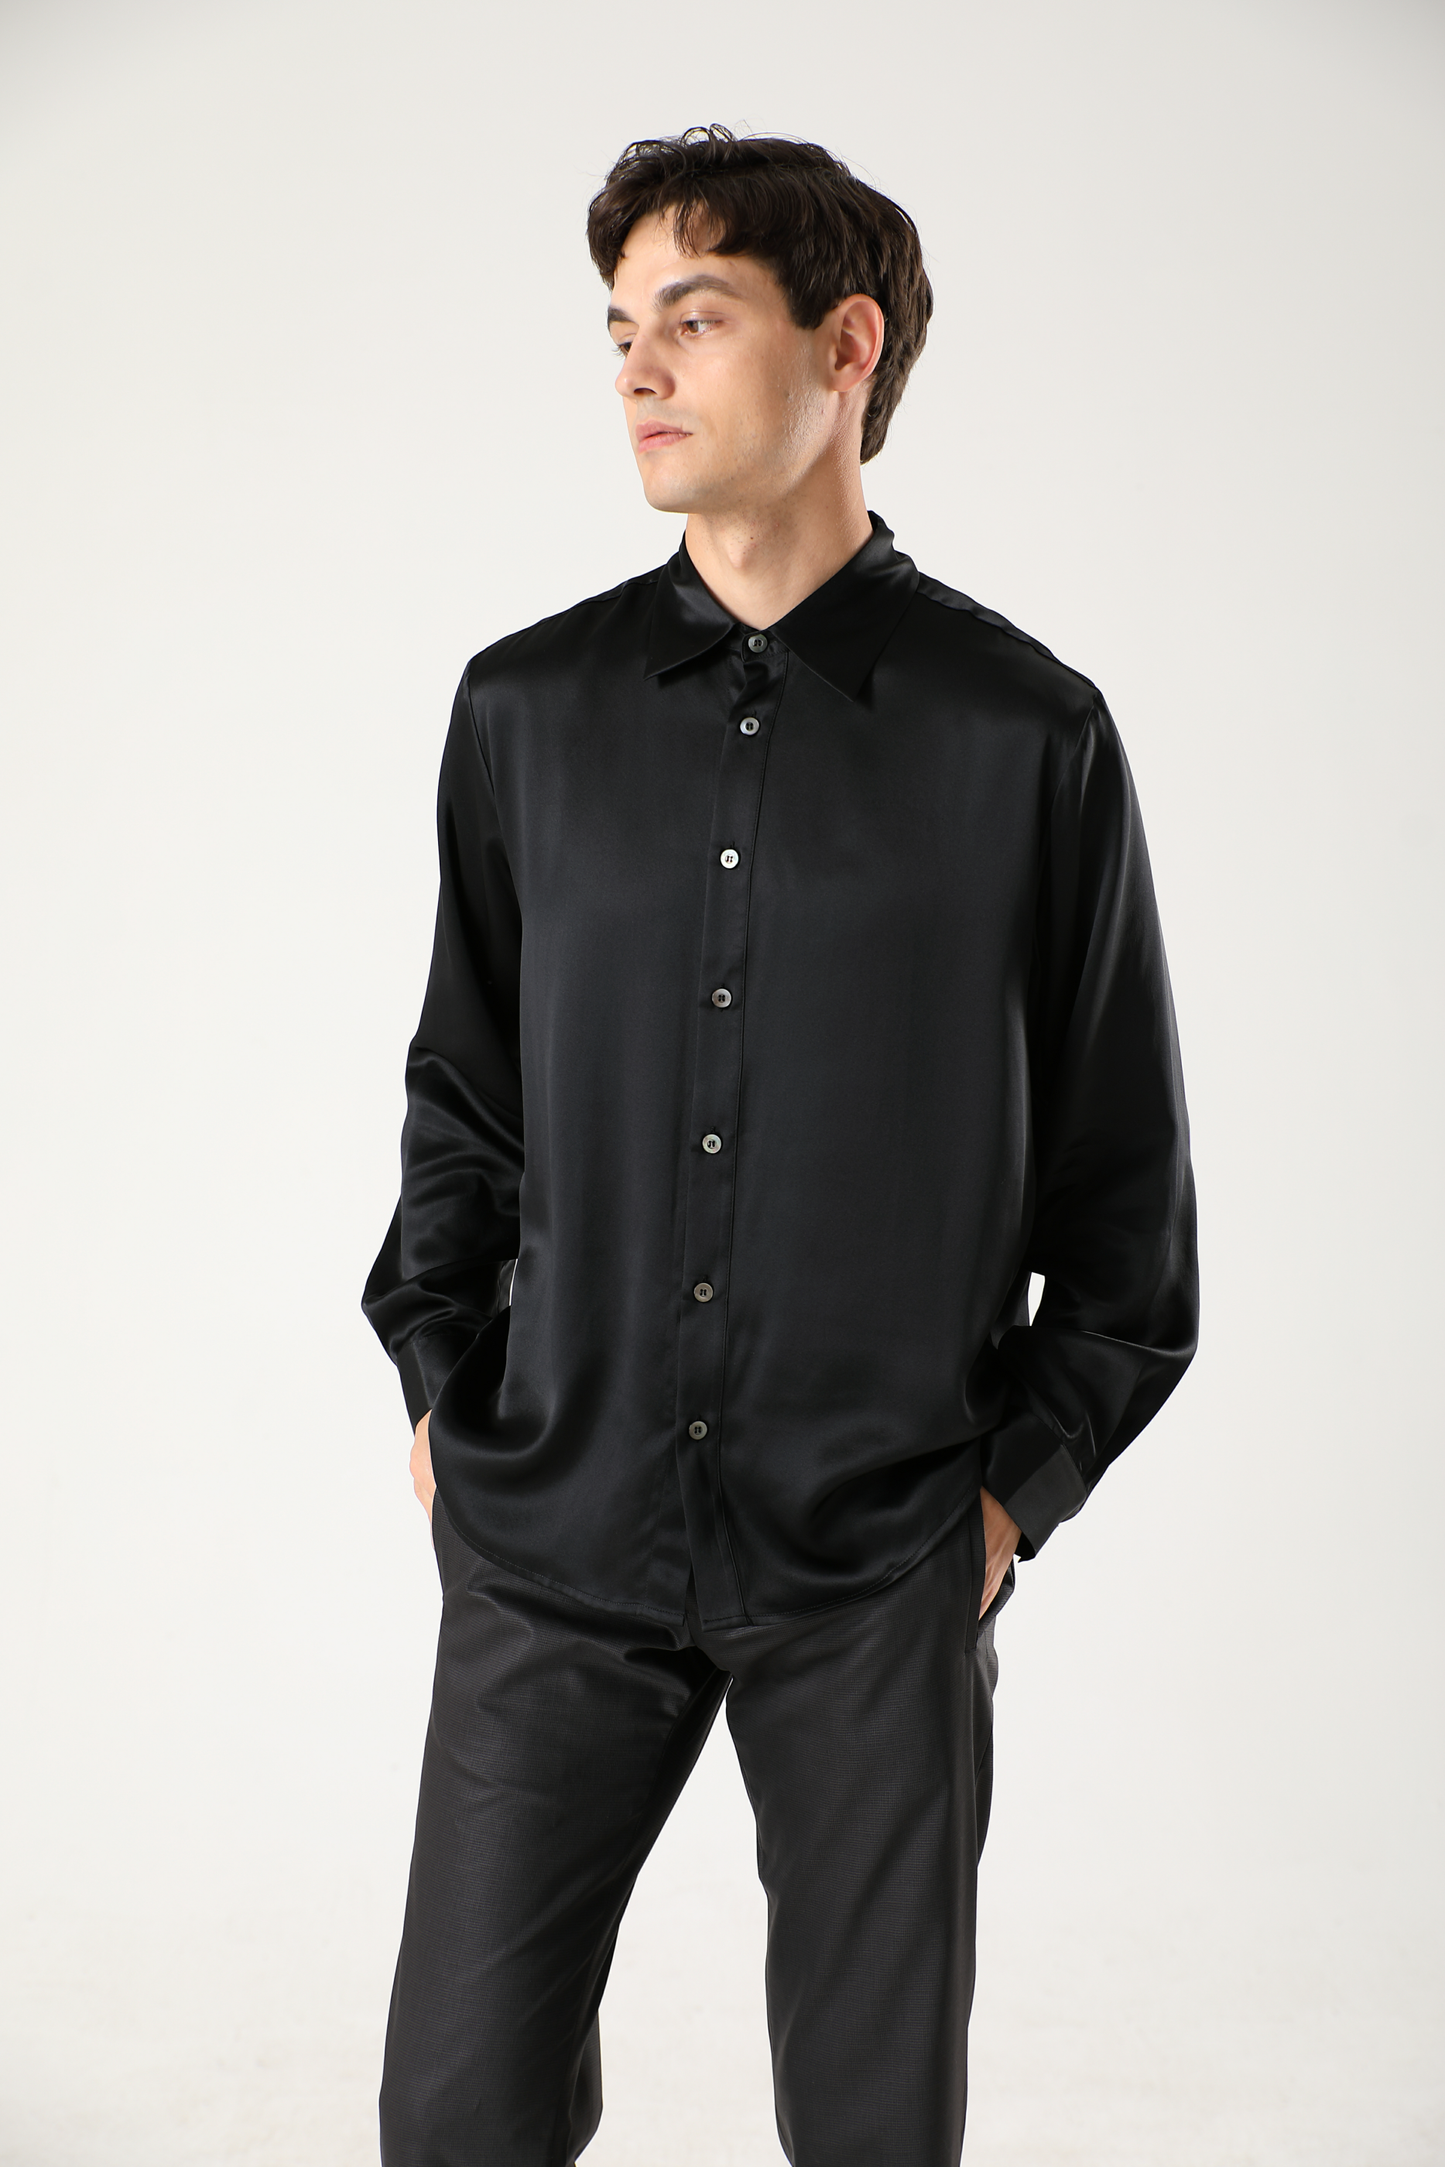 Men's silk shirt with kent collar